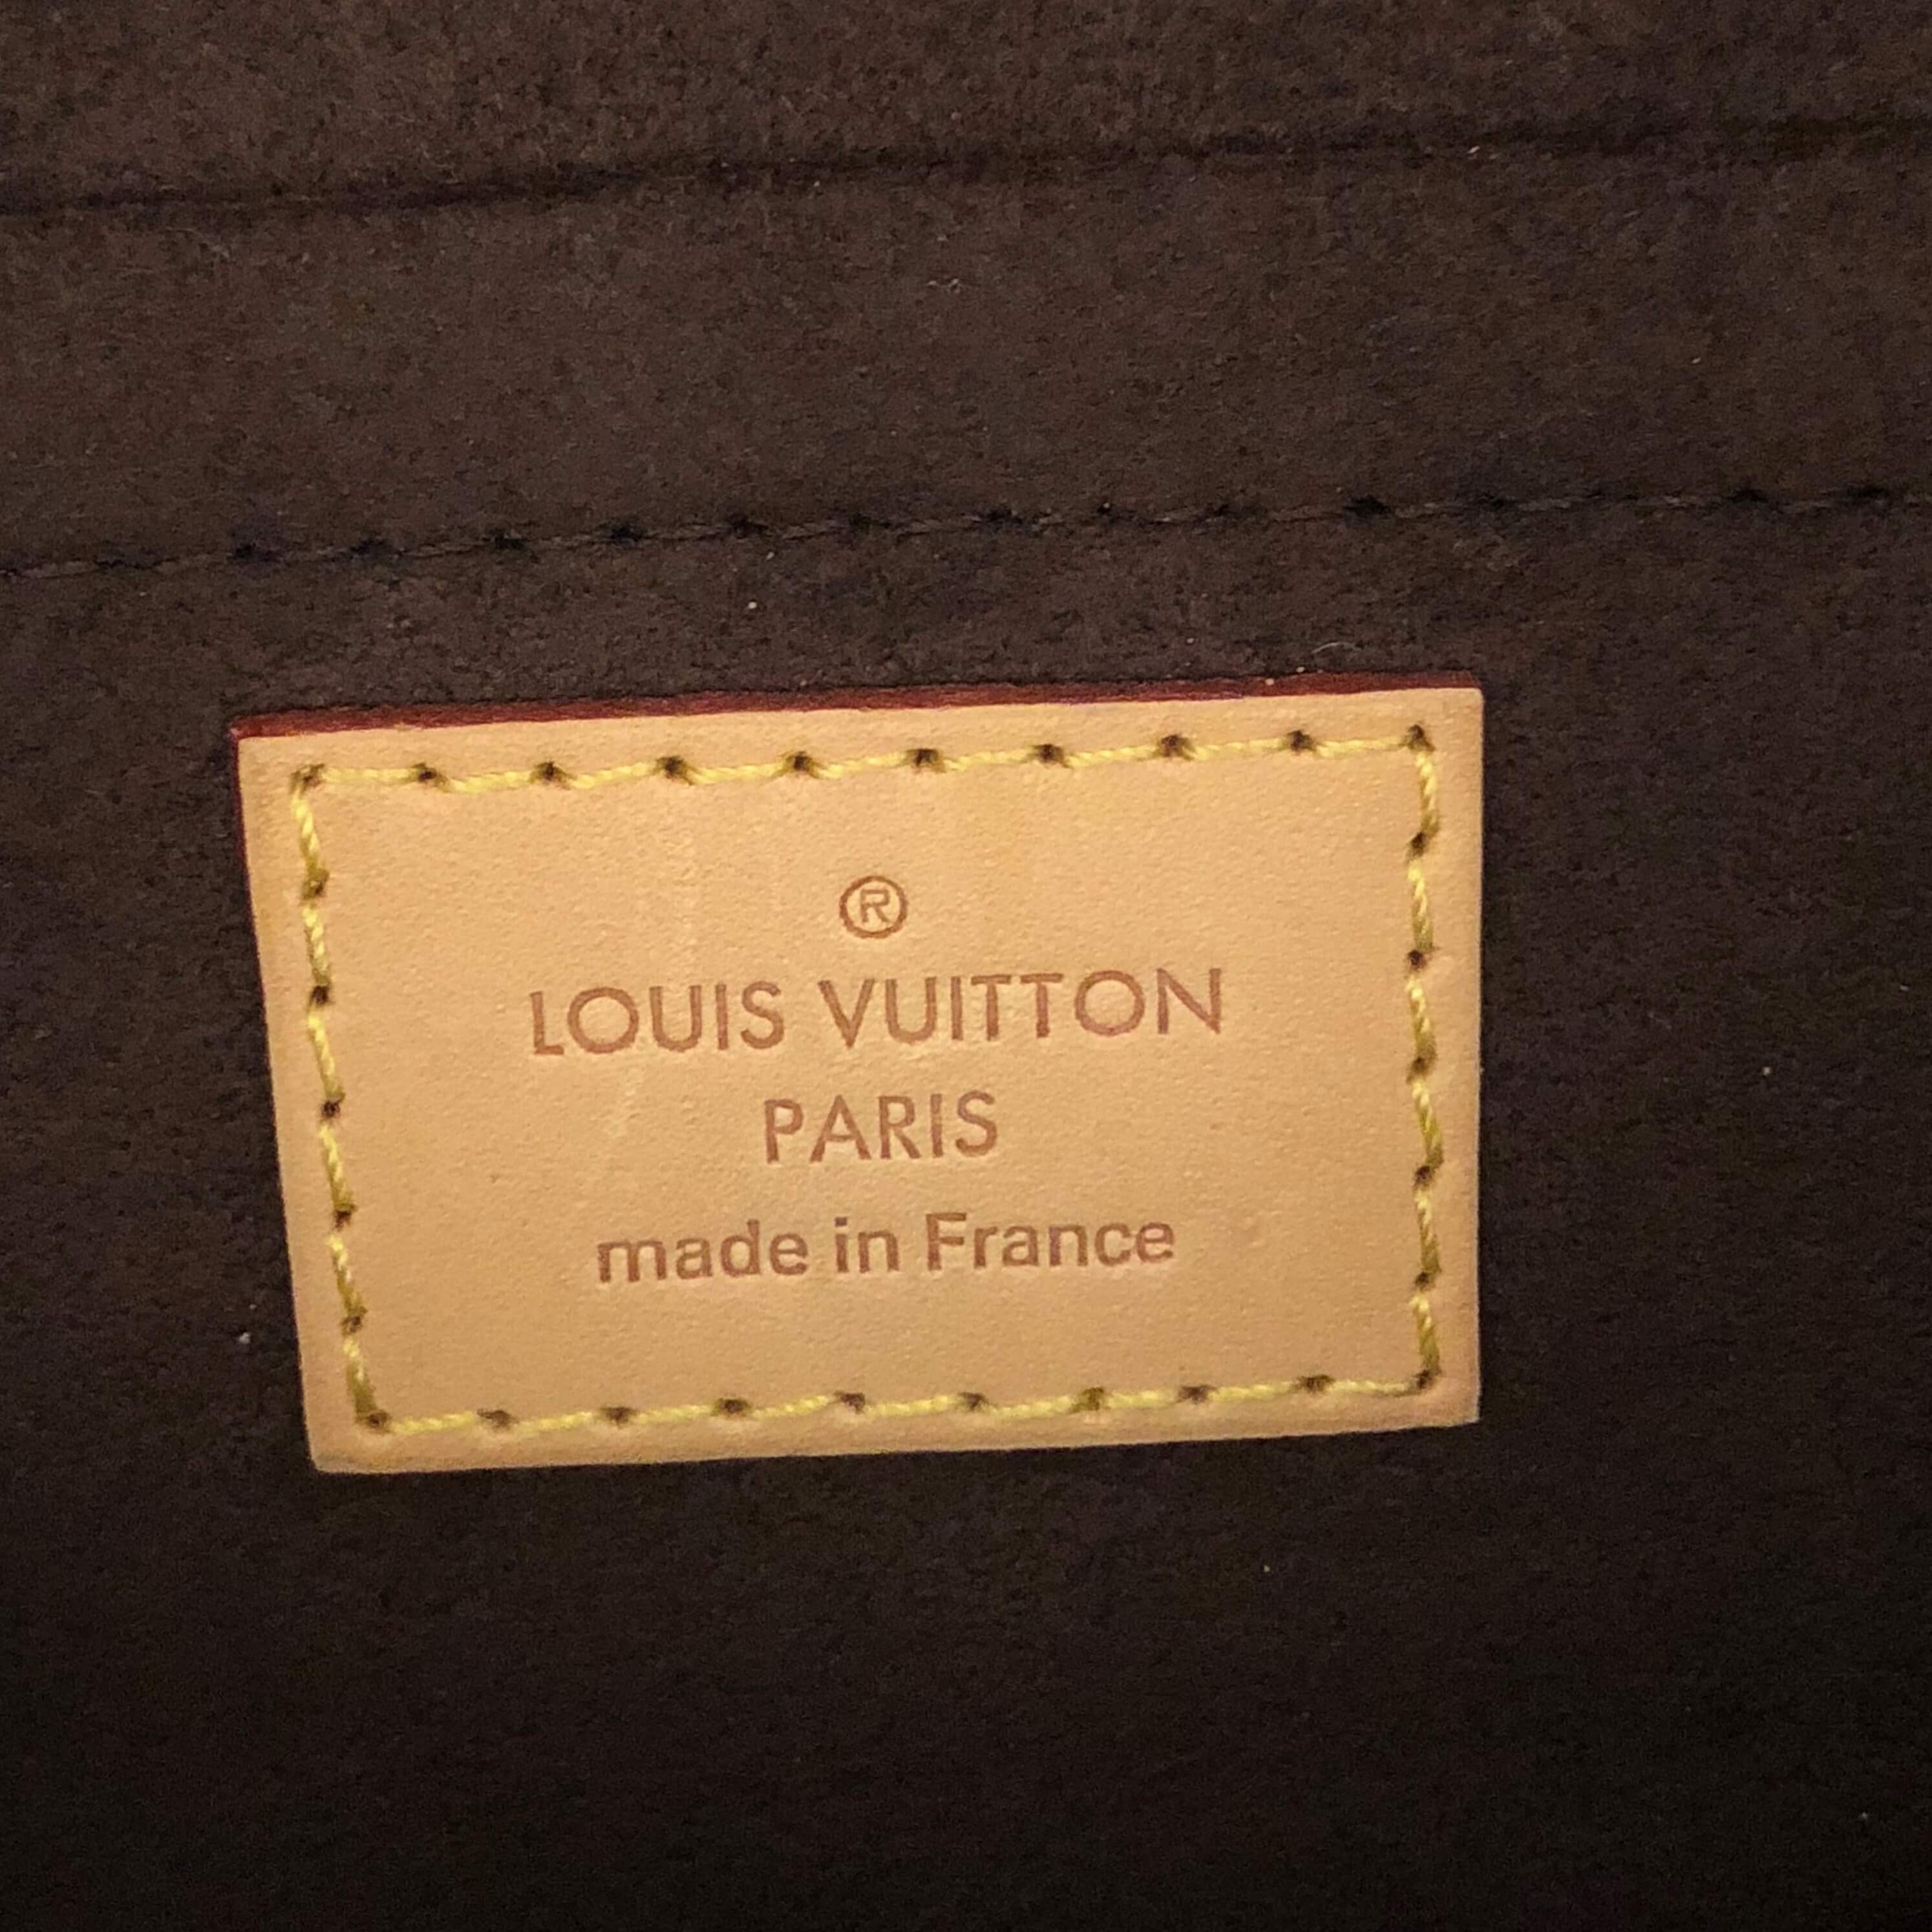 Outgoing Louis Vuitton chief visits Manila  LifestyleINQ